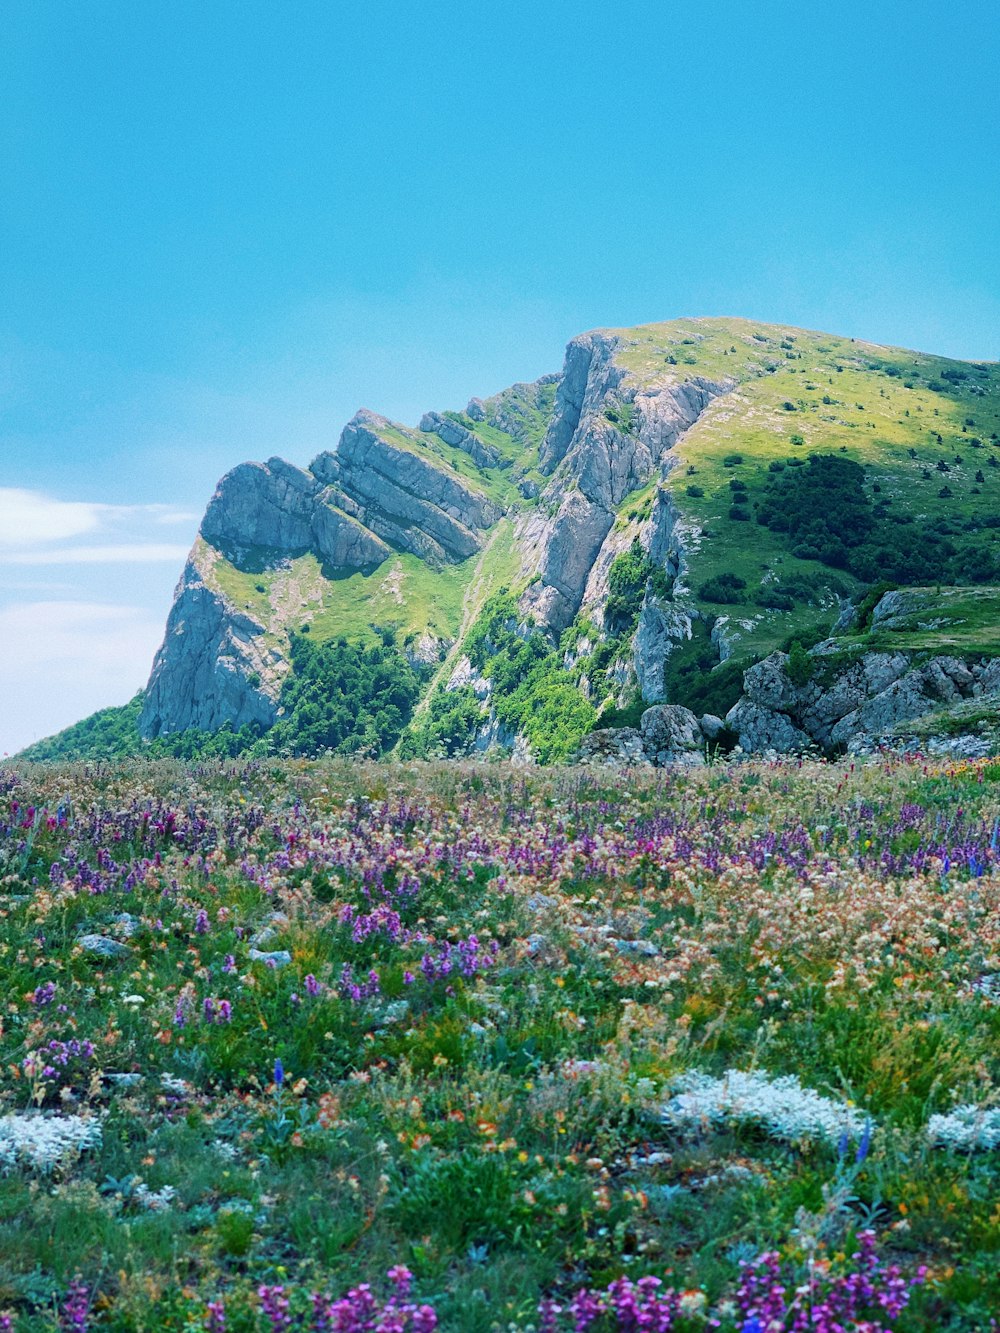 Campo de flores púrpuras cerca de montañas verdes y grises bajo el cielo azul durante el día